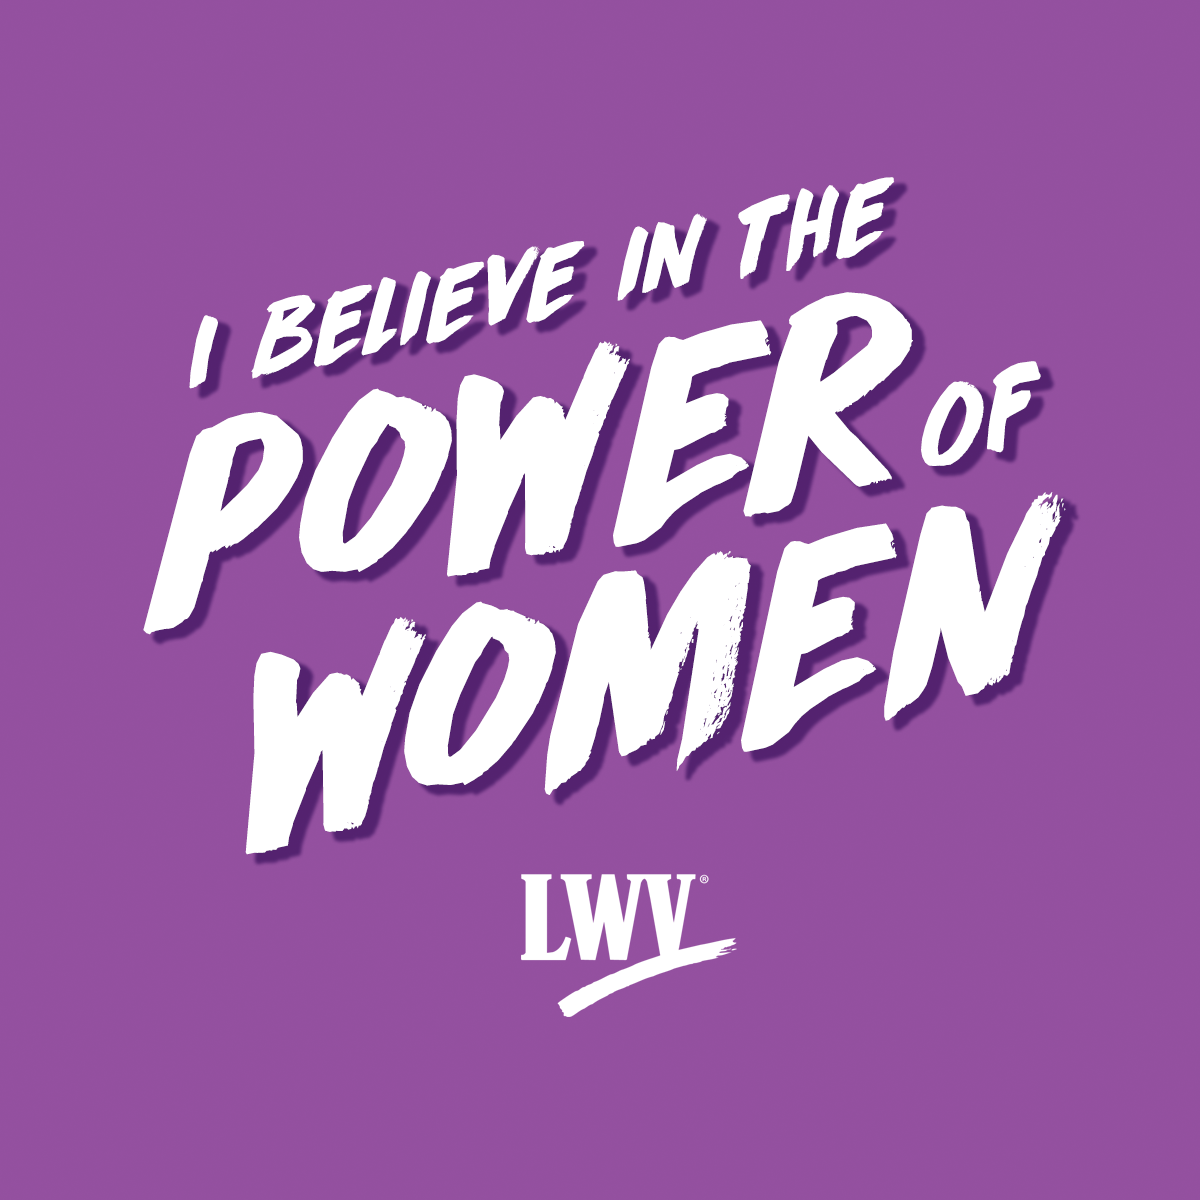 I believe in the power of women